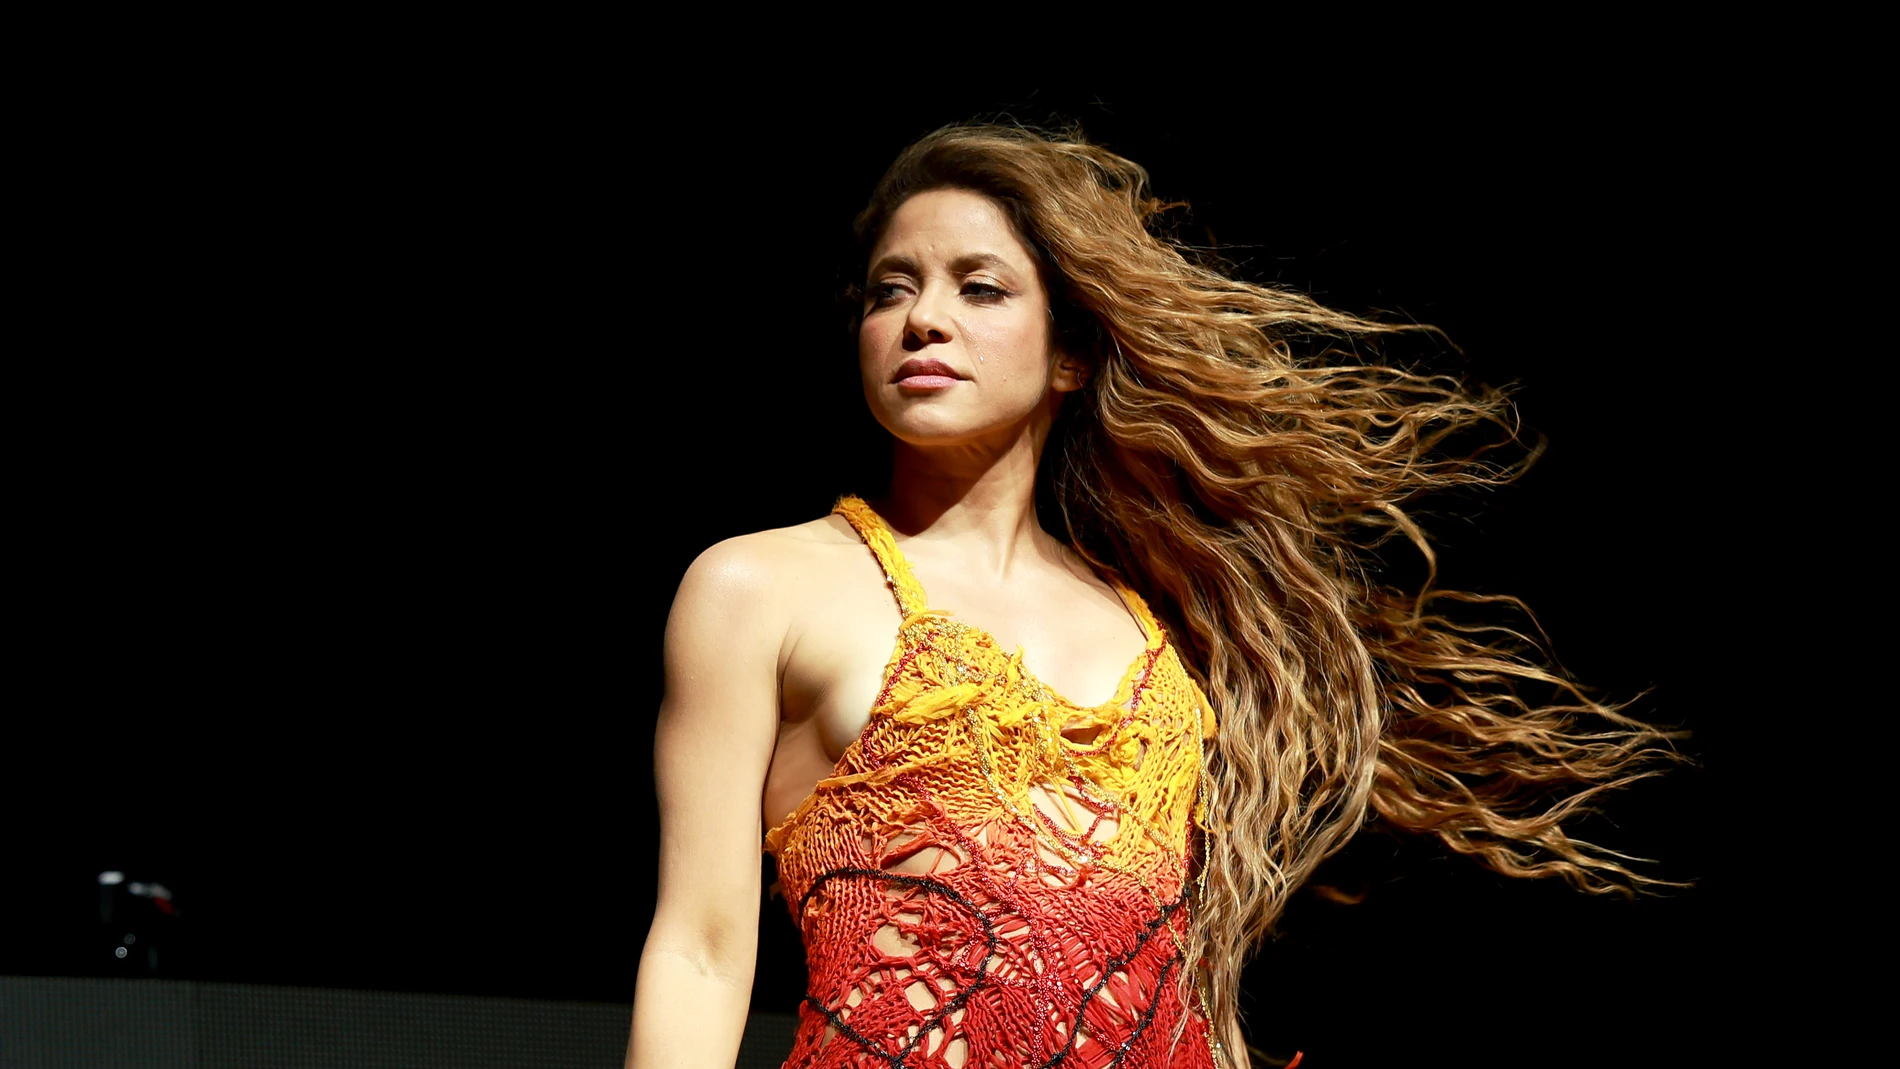 Shakira con Bizarrap en Coachella